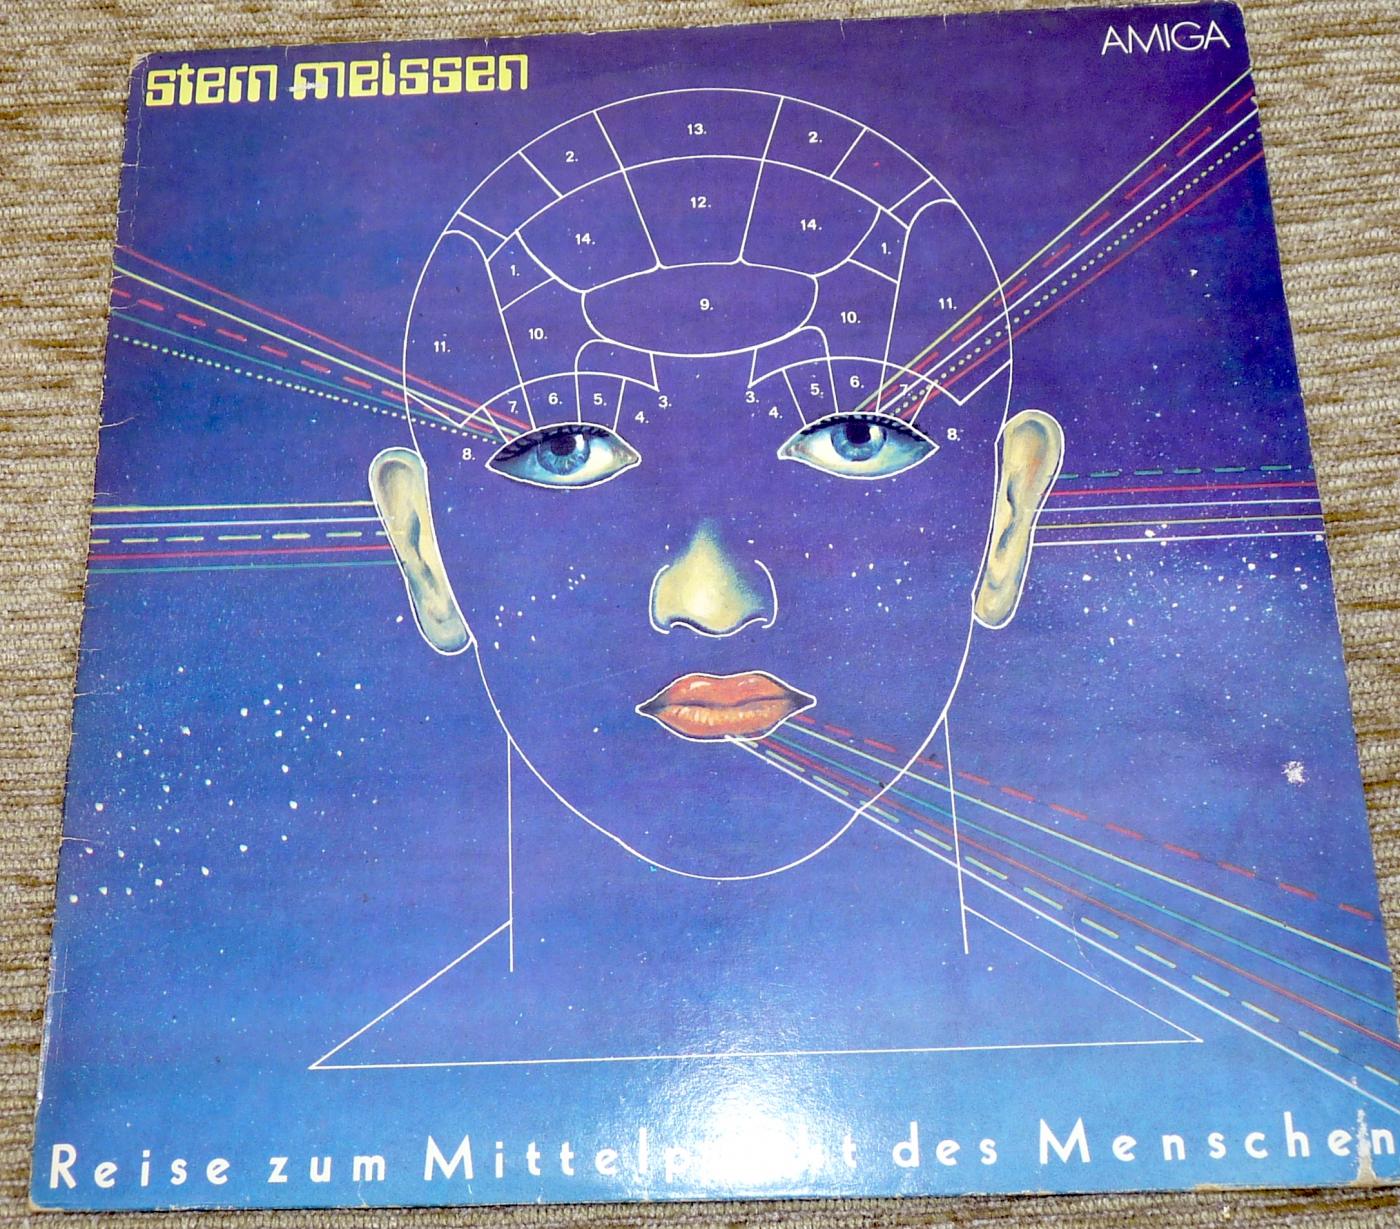 Stern Meissen - Reise zum Mittelpunkt des Menschen, 1981, Amiga, 855811